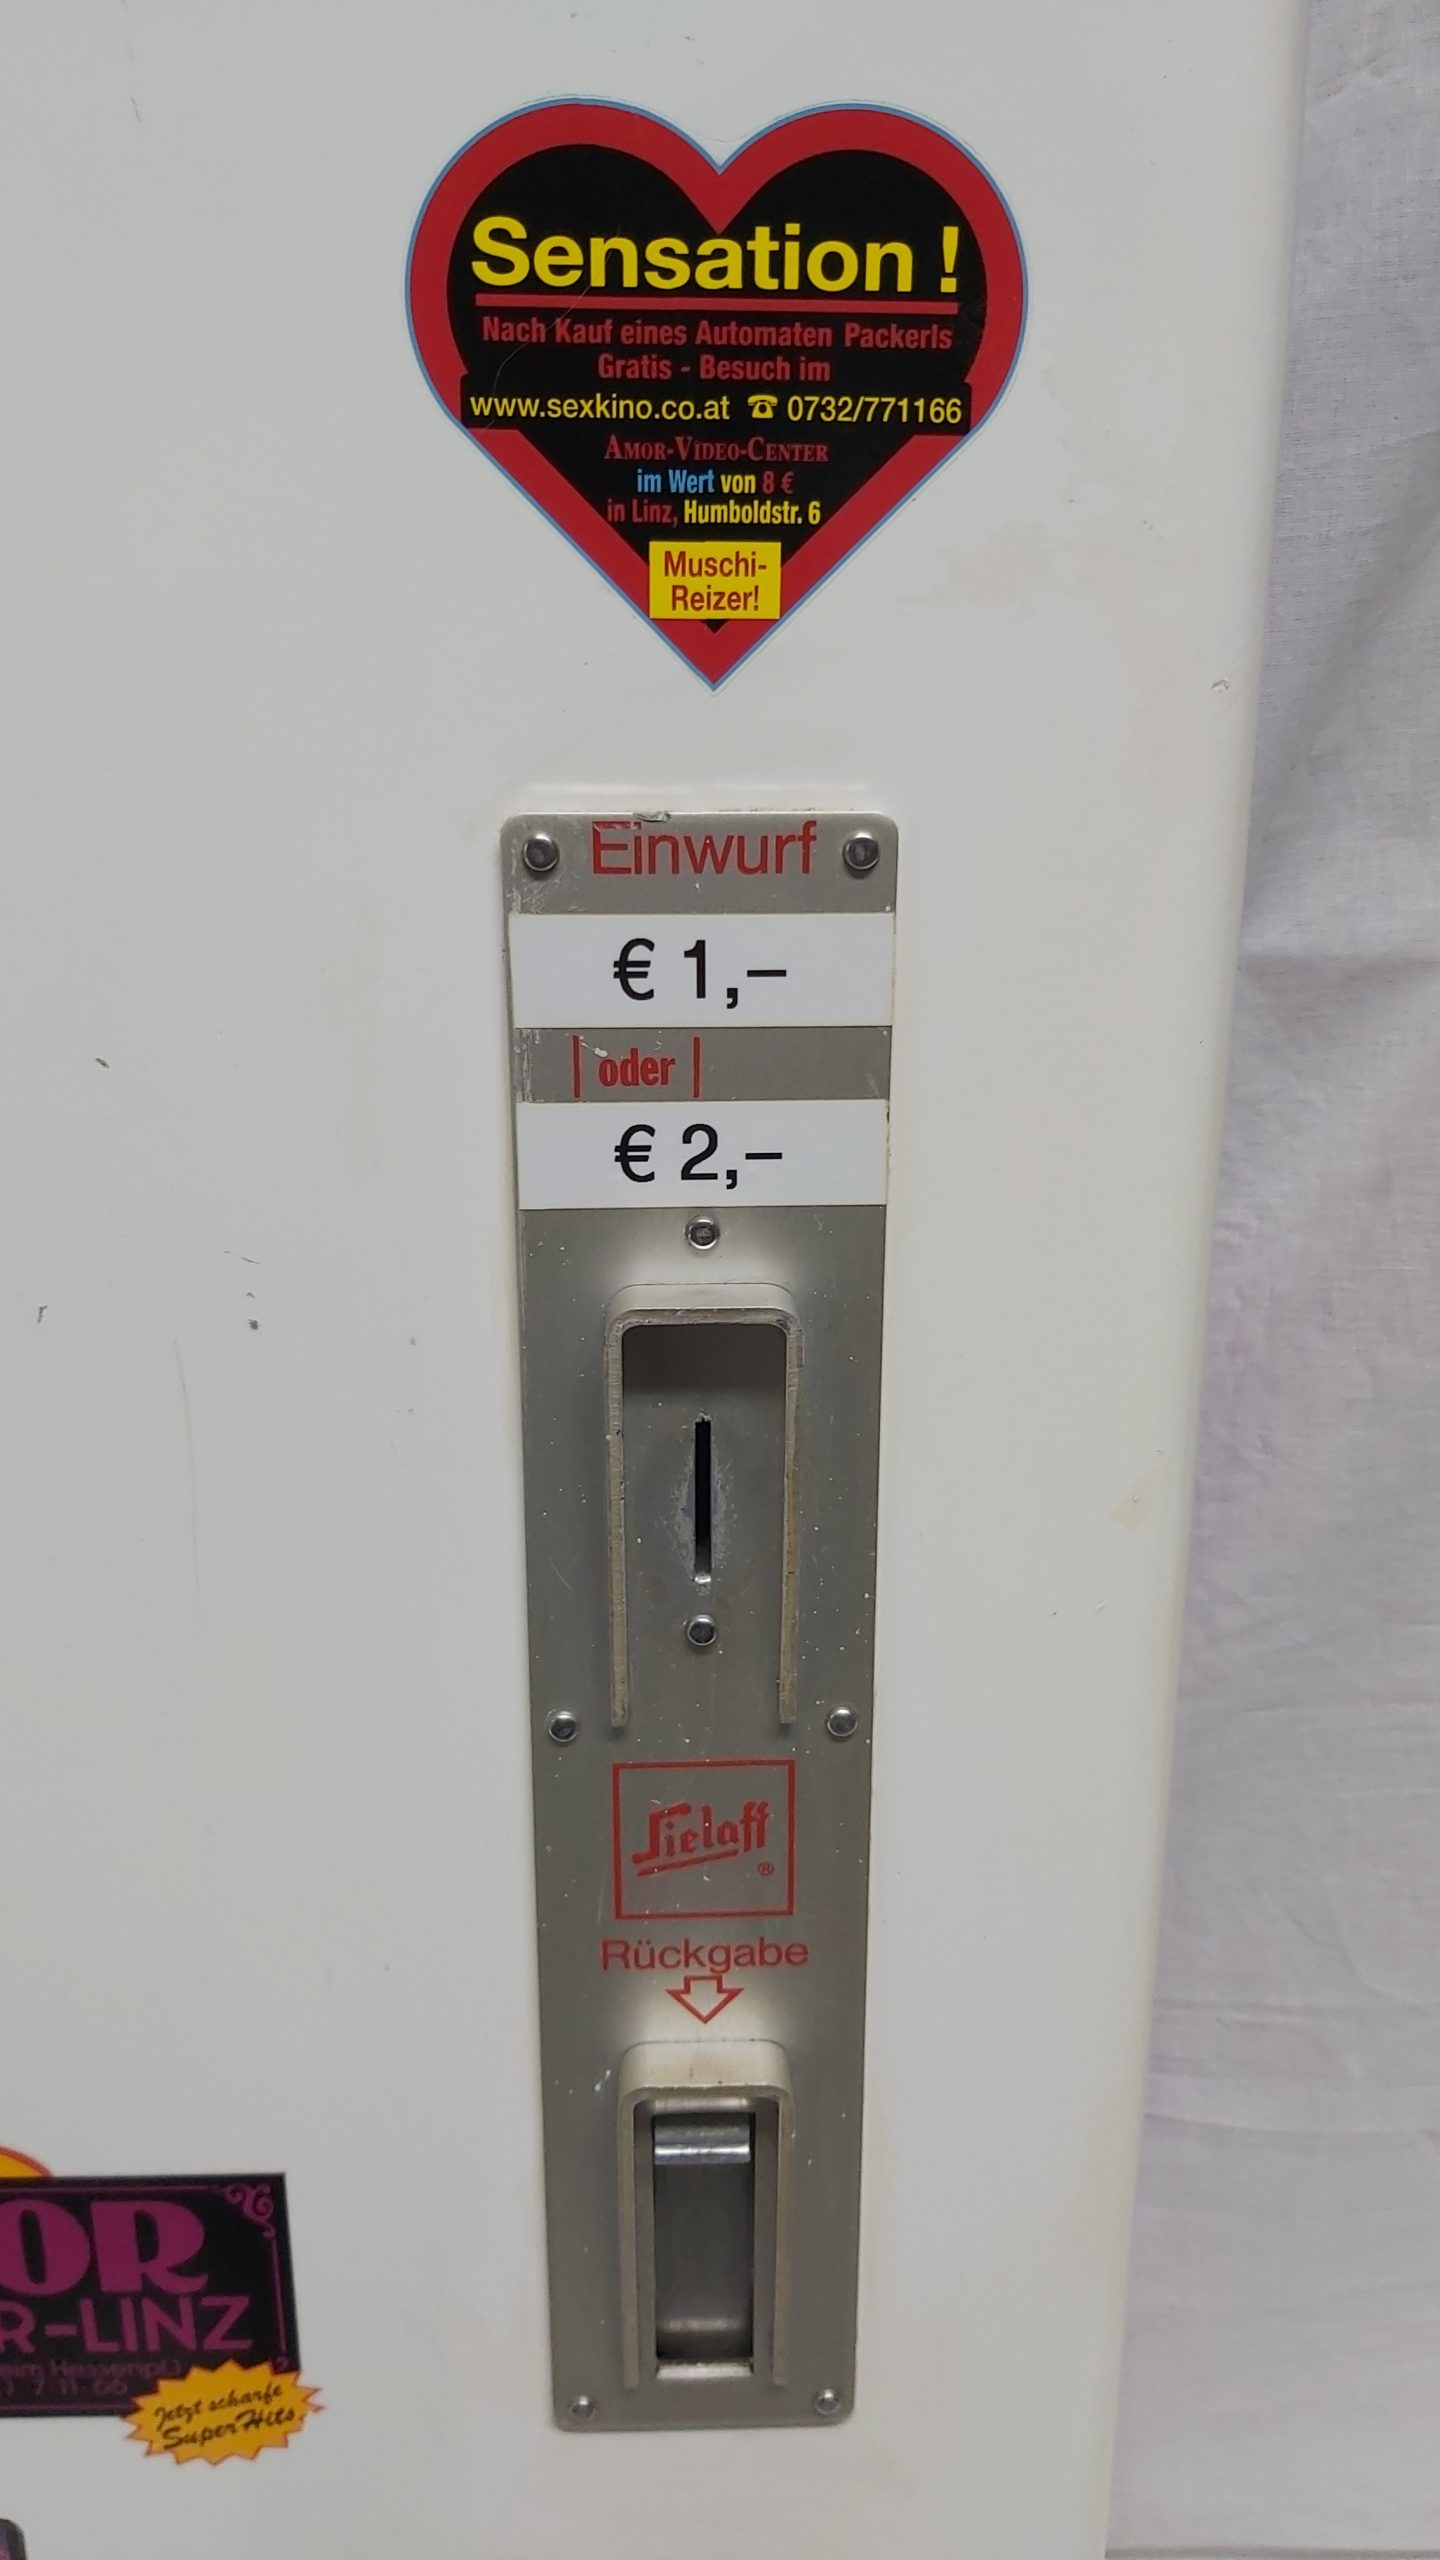 Kondomautomat Sielaff 5 Schacht